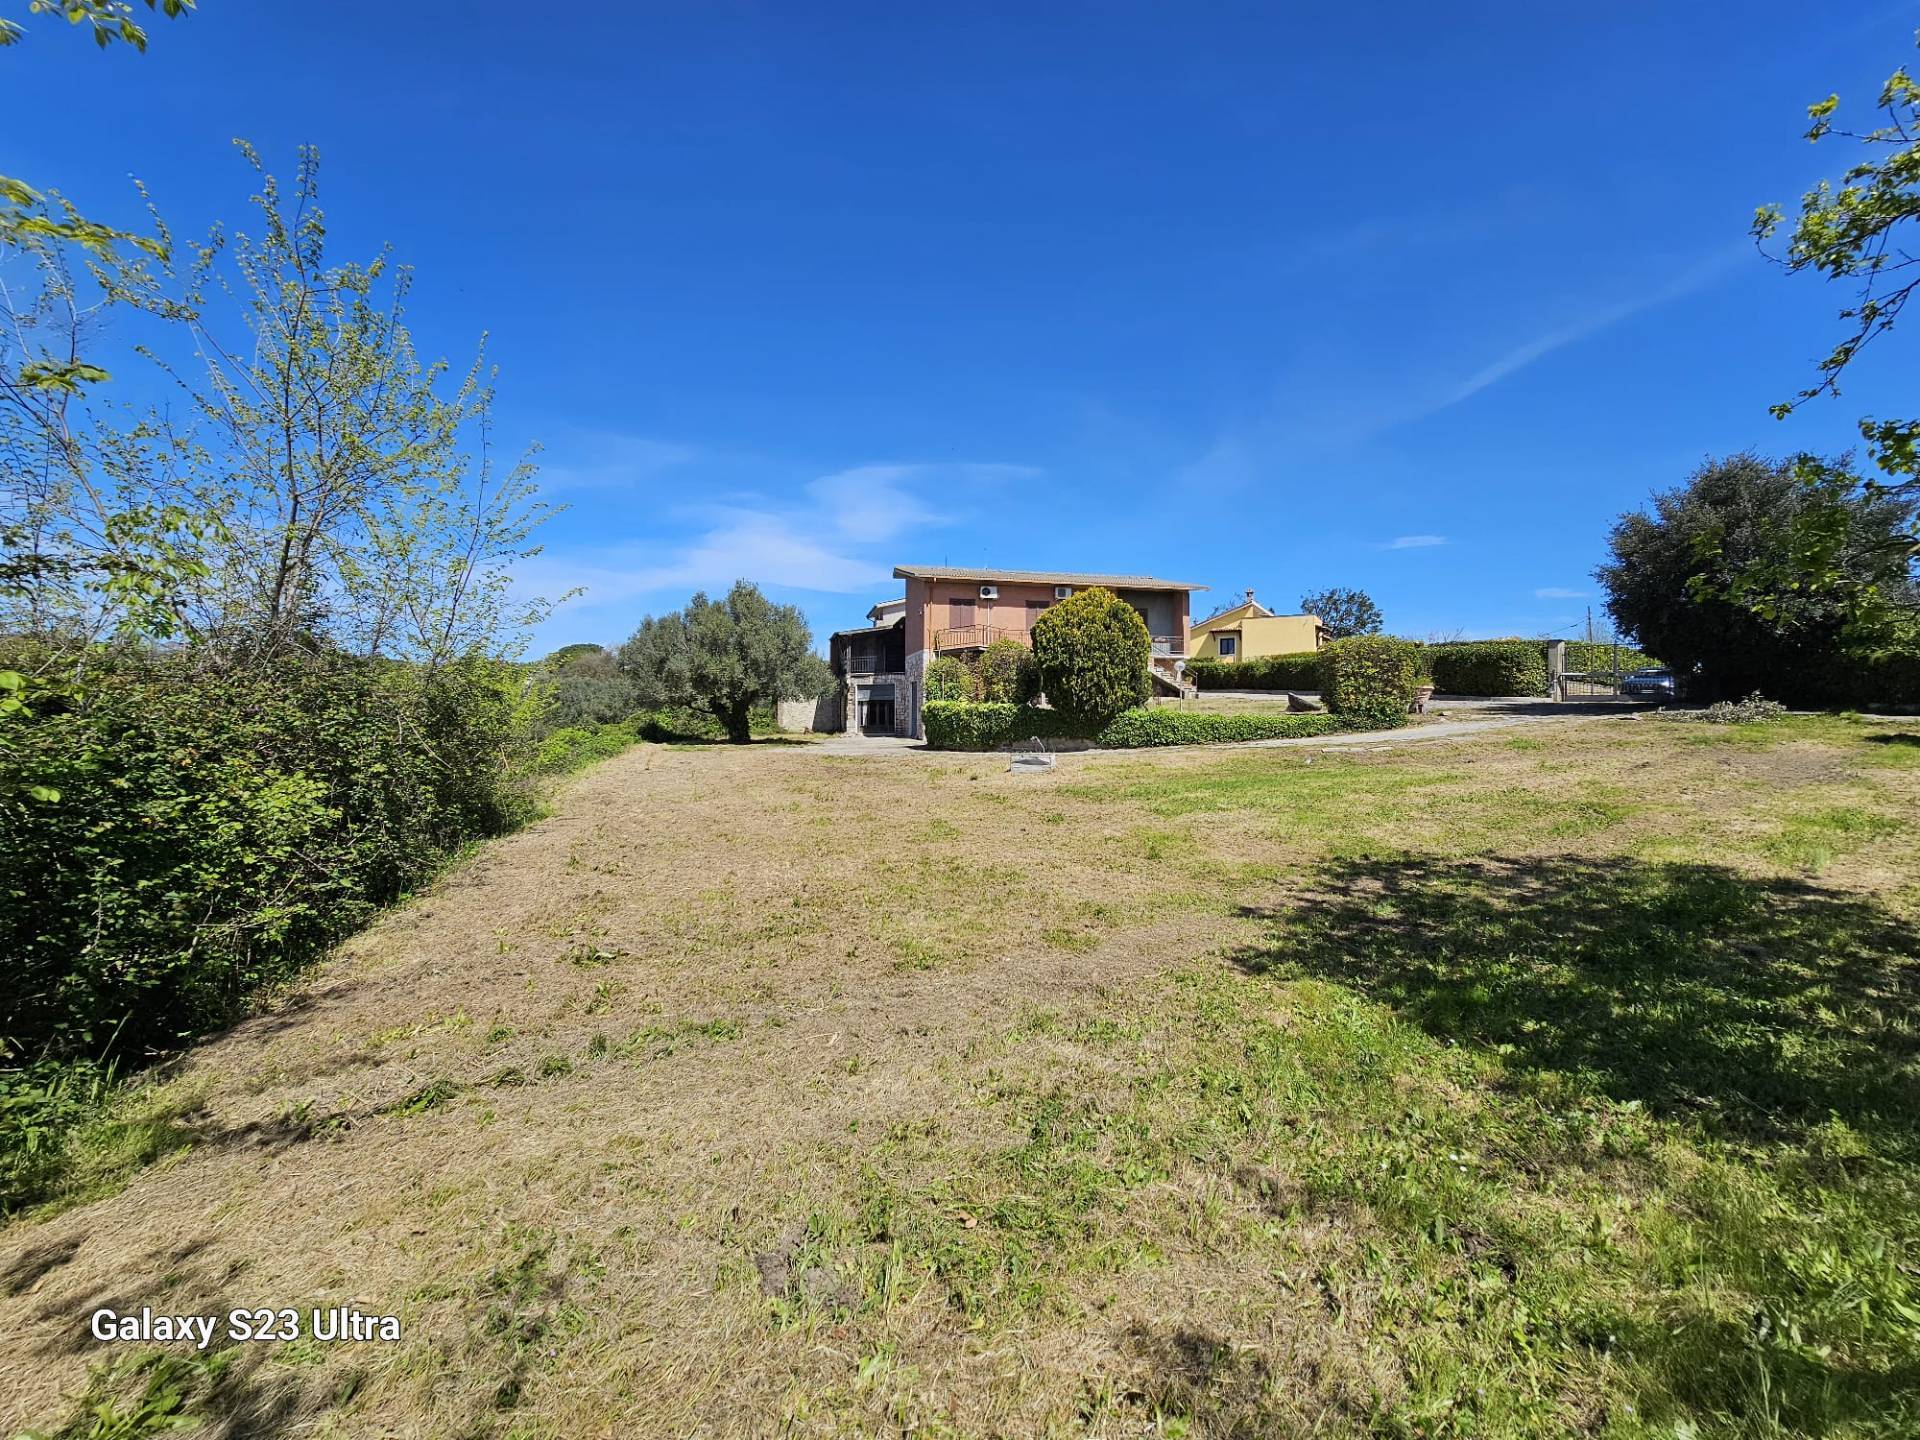 Villa in vendita a Formello, 8 locali, zona Località: centrale, prezzo € 270.000 | PortaleAgenzieImmobiliari.it